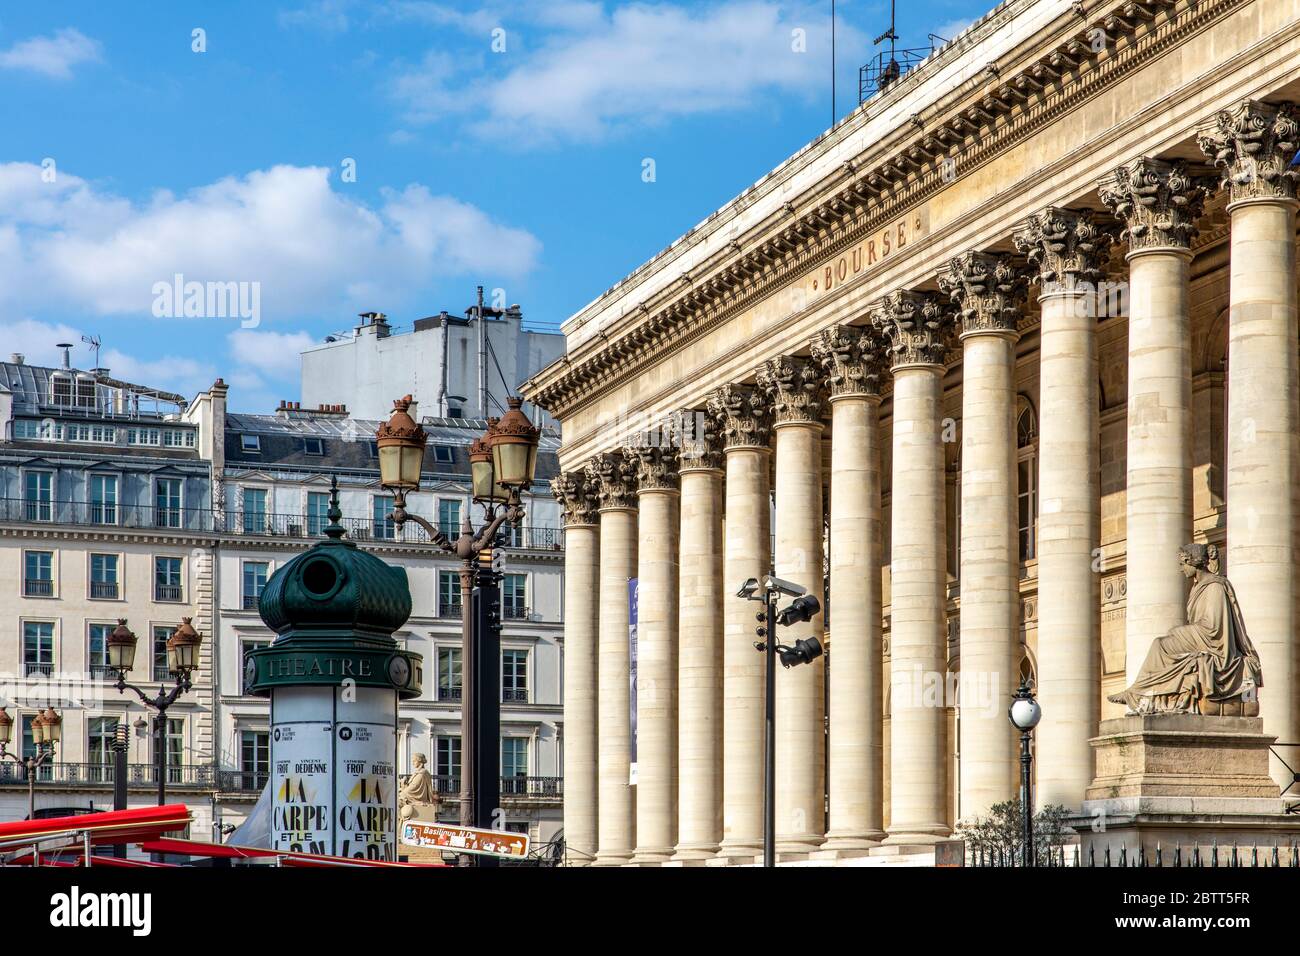 Paris, France - 14 mai 2020 : la Bourse de Paris, le Palais de Pierre de la Bourse avec des colonnes monumentales Banque D'Images